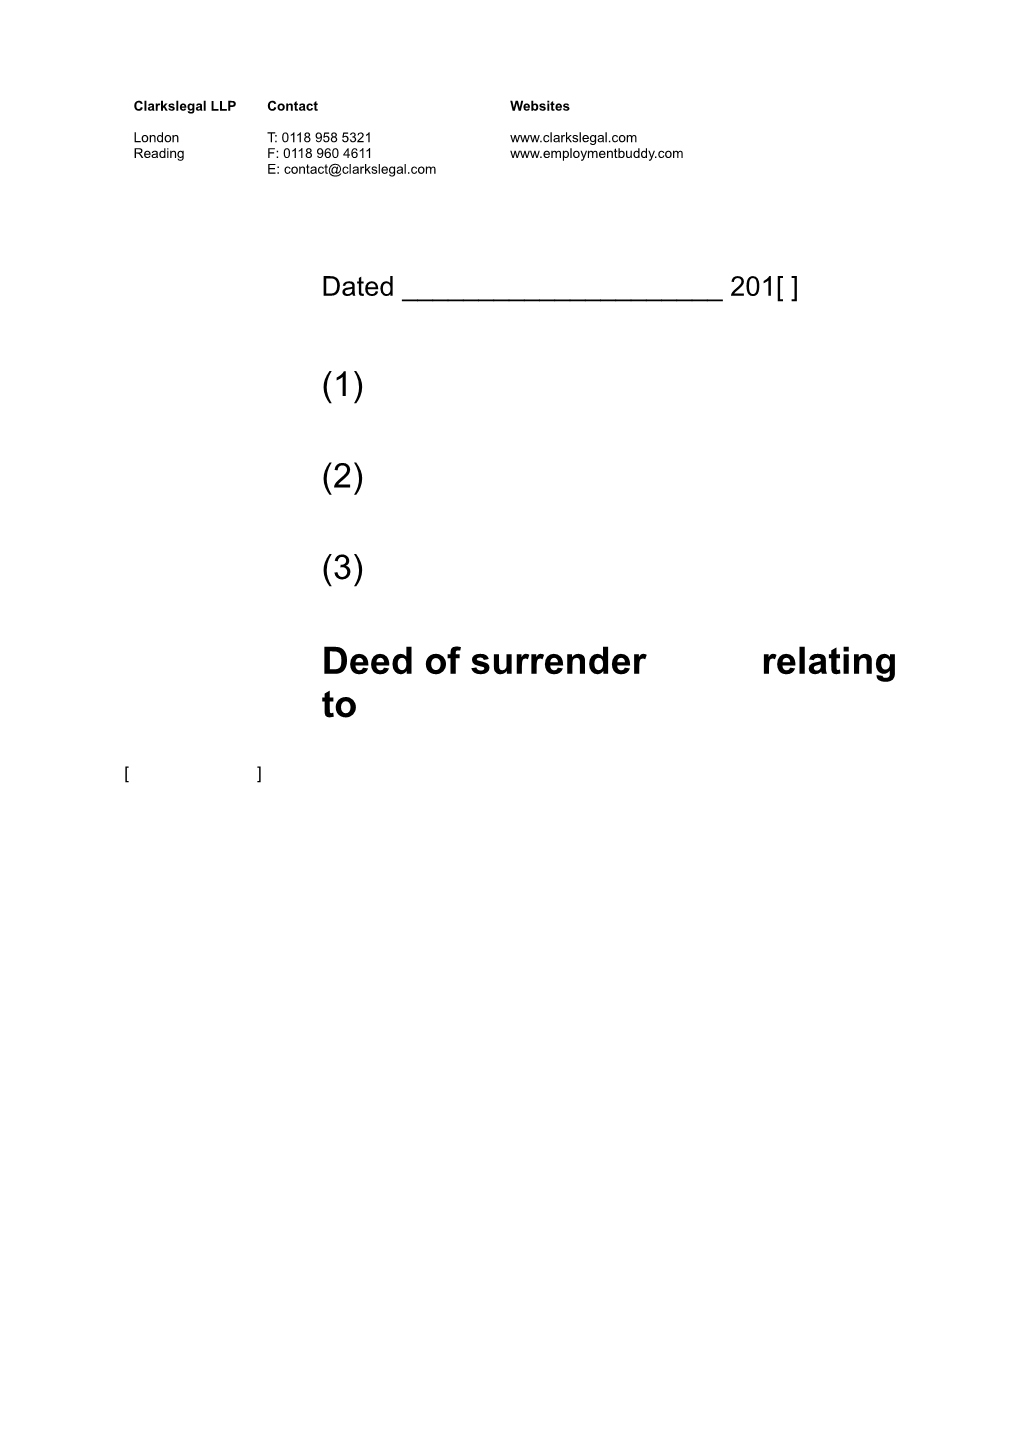 Deed of Surrender